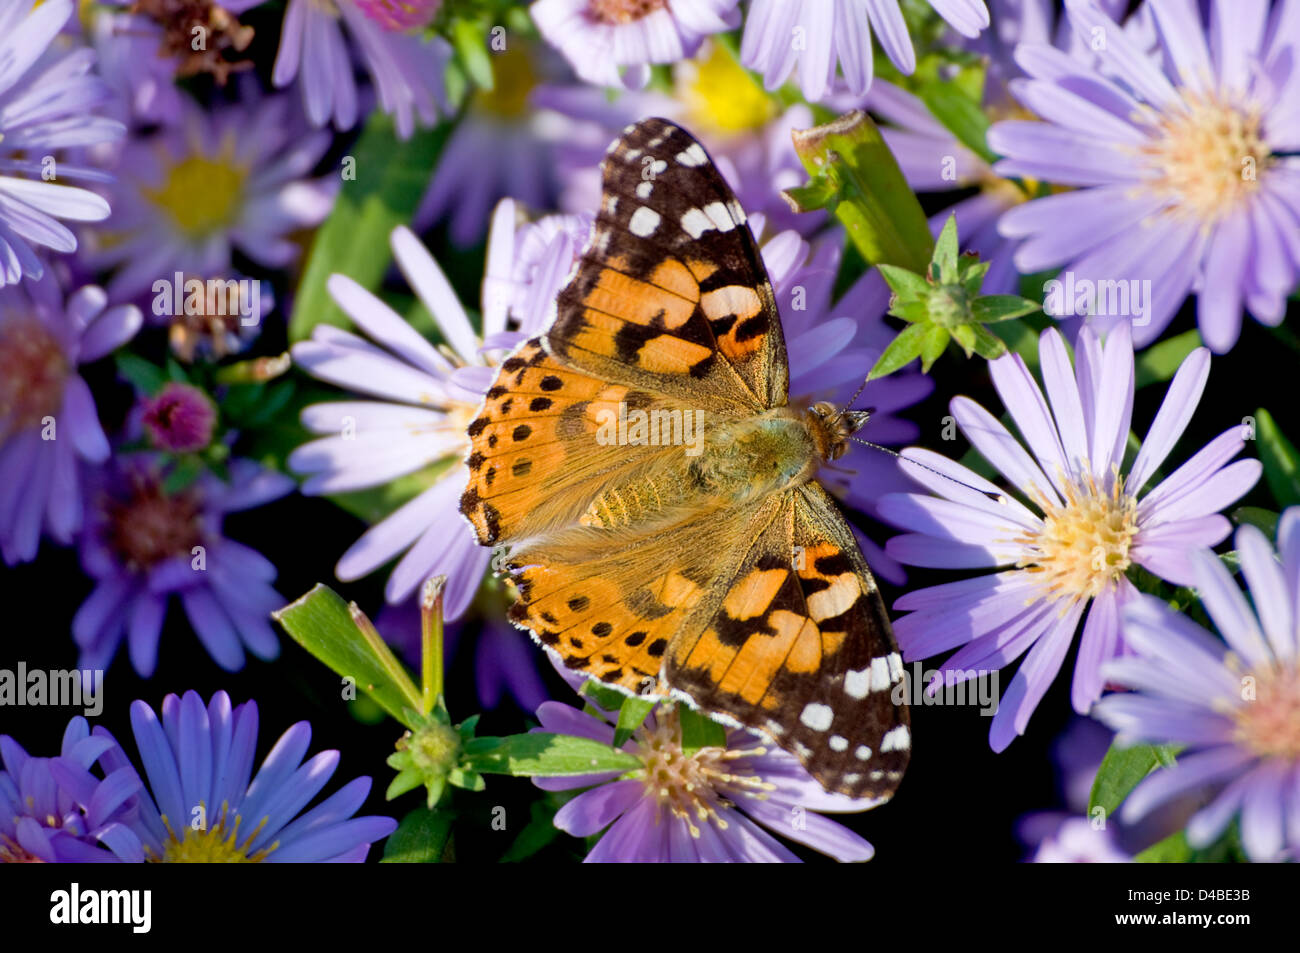 La mariposa se asienta sobre una flor azul Foto de stock